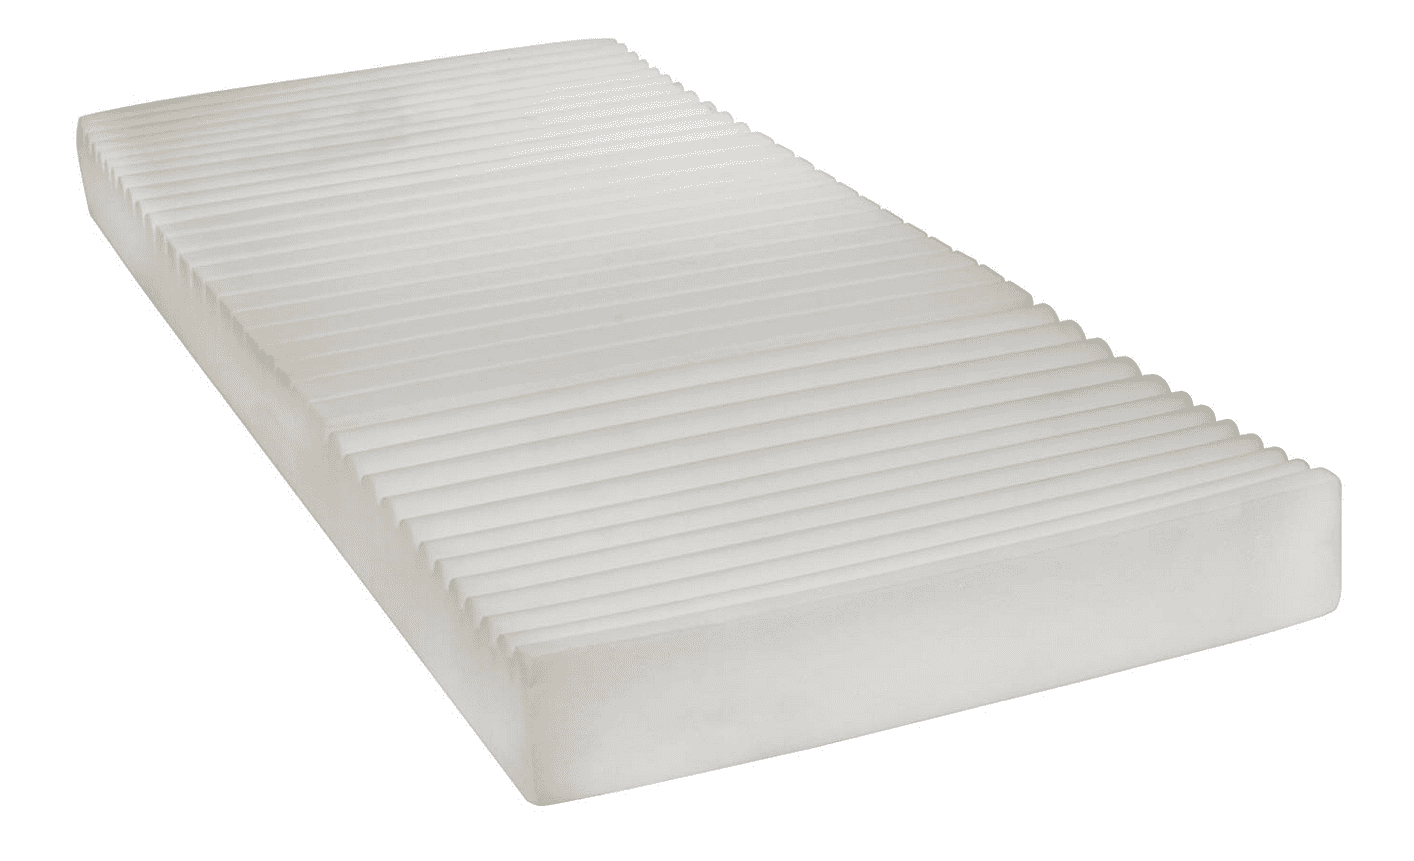 therapeutic mattress pad at costco